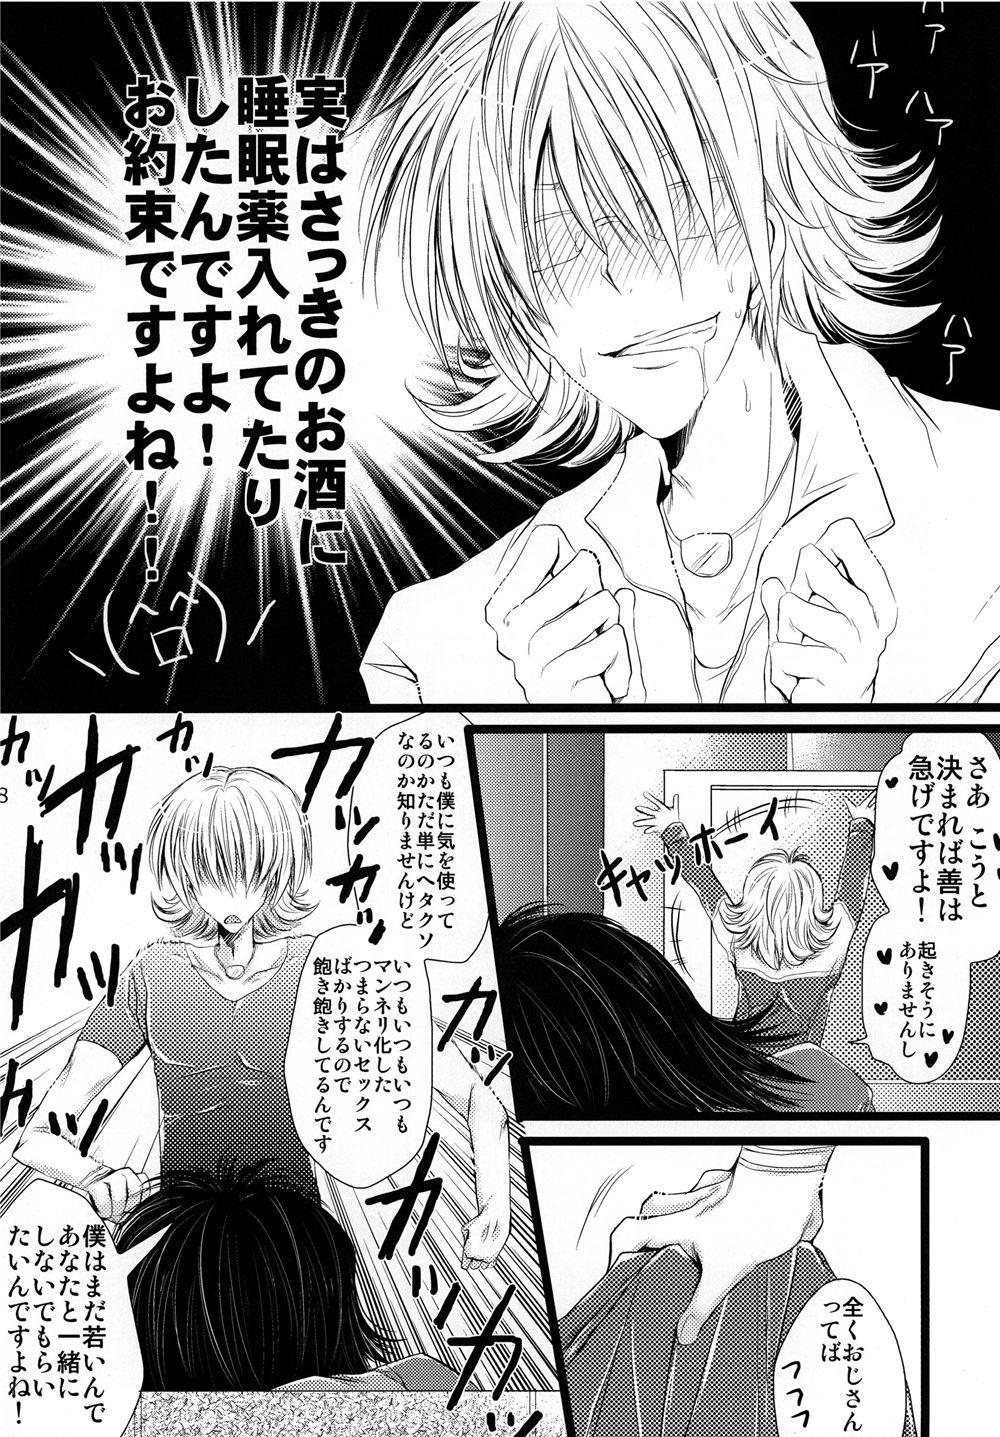 Screaming Saa, Boku to Ochimashi Yora - Tiger and bunny Pure 18 - Page 8